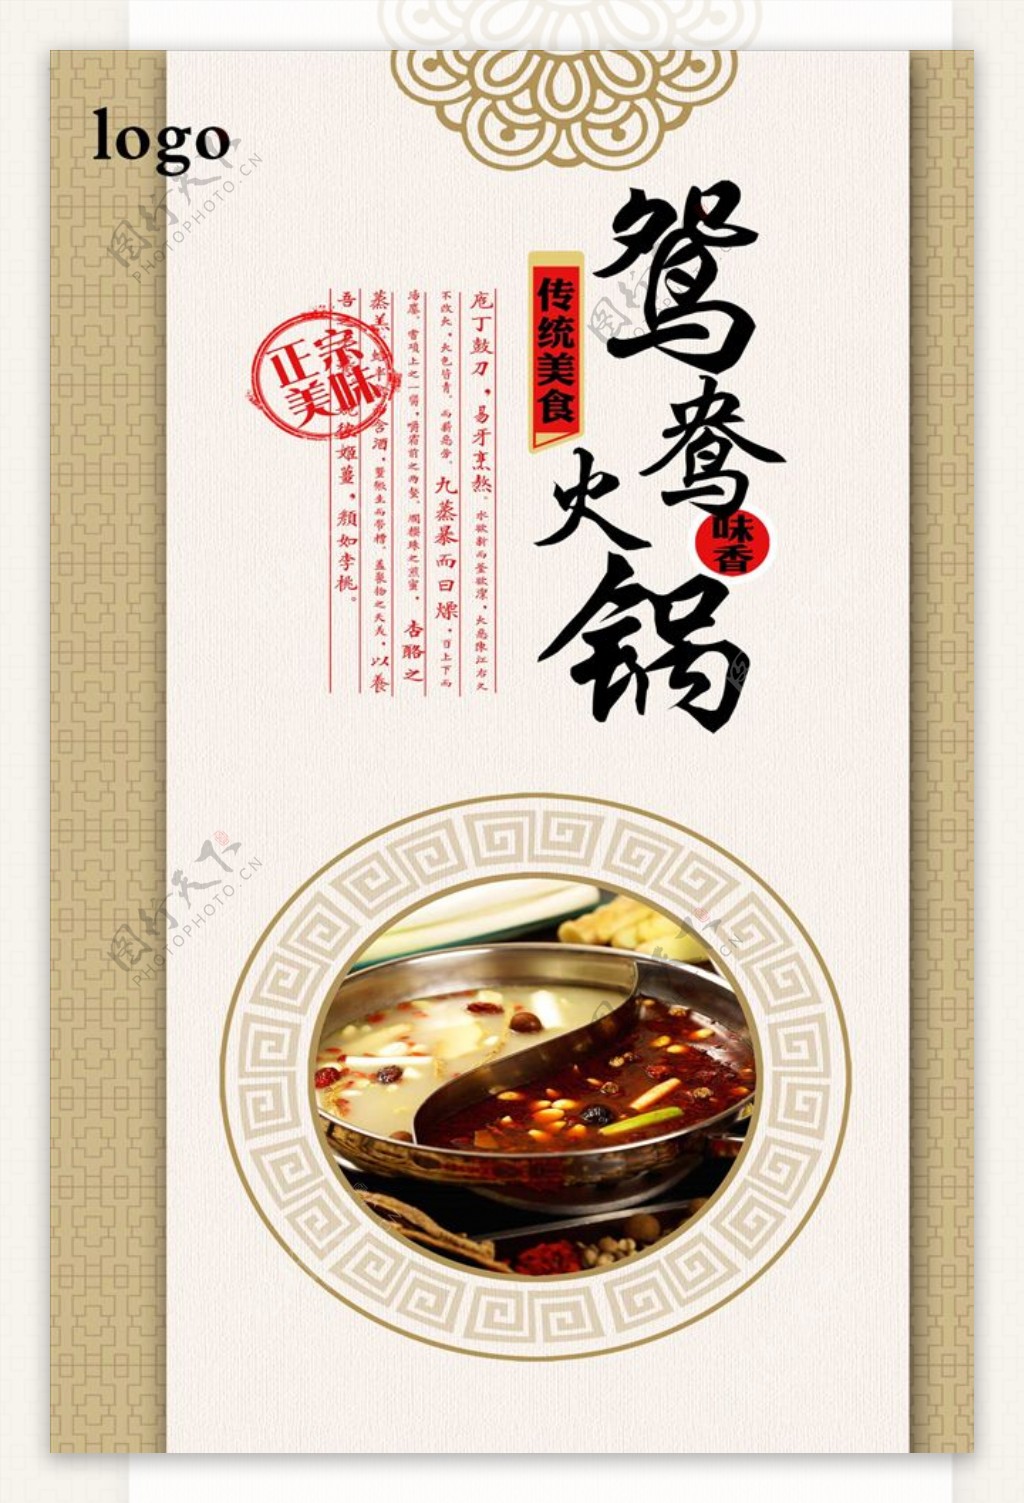 中式经典酸菜鱼火锅海报下载